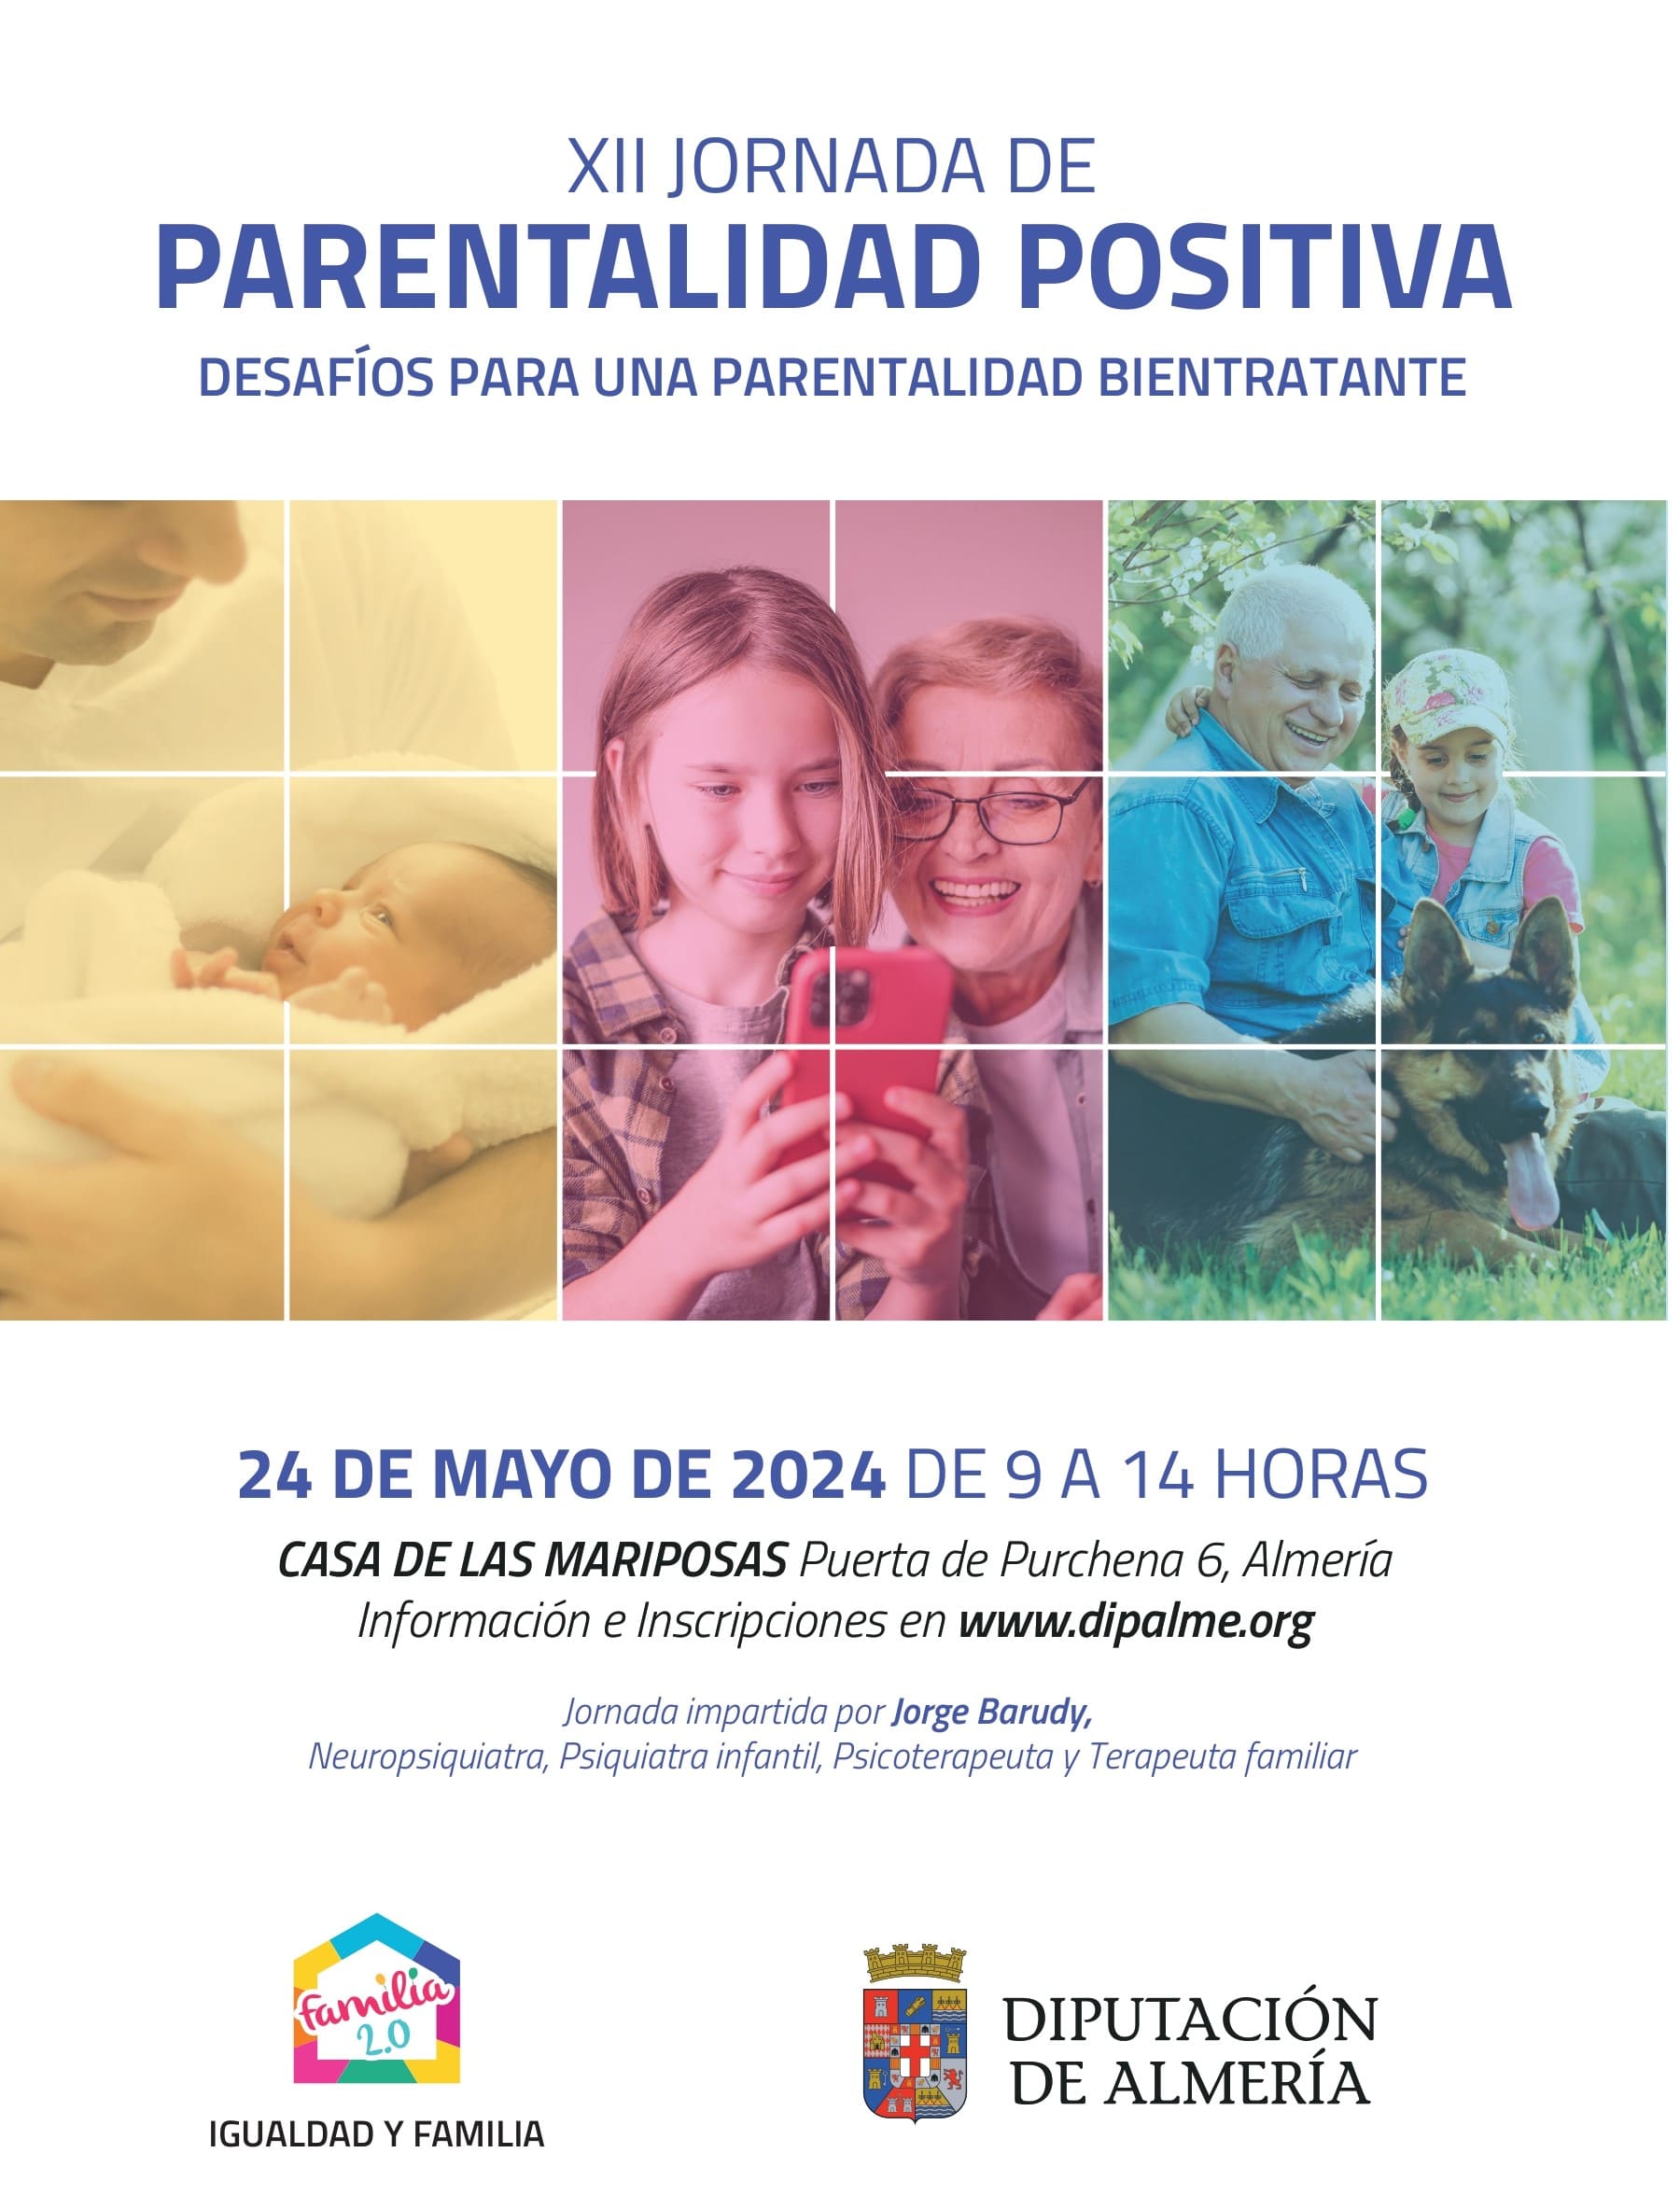 XII JORNADA DE PARENTALIDAD POSITIVA. INSCRIPCIONES